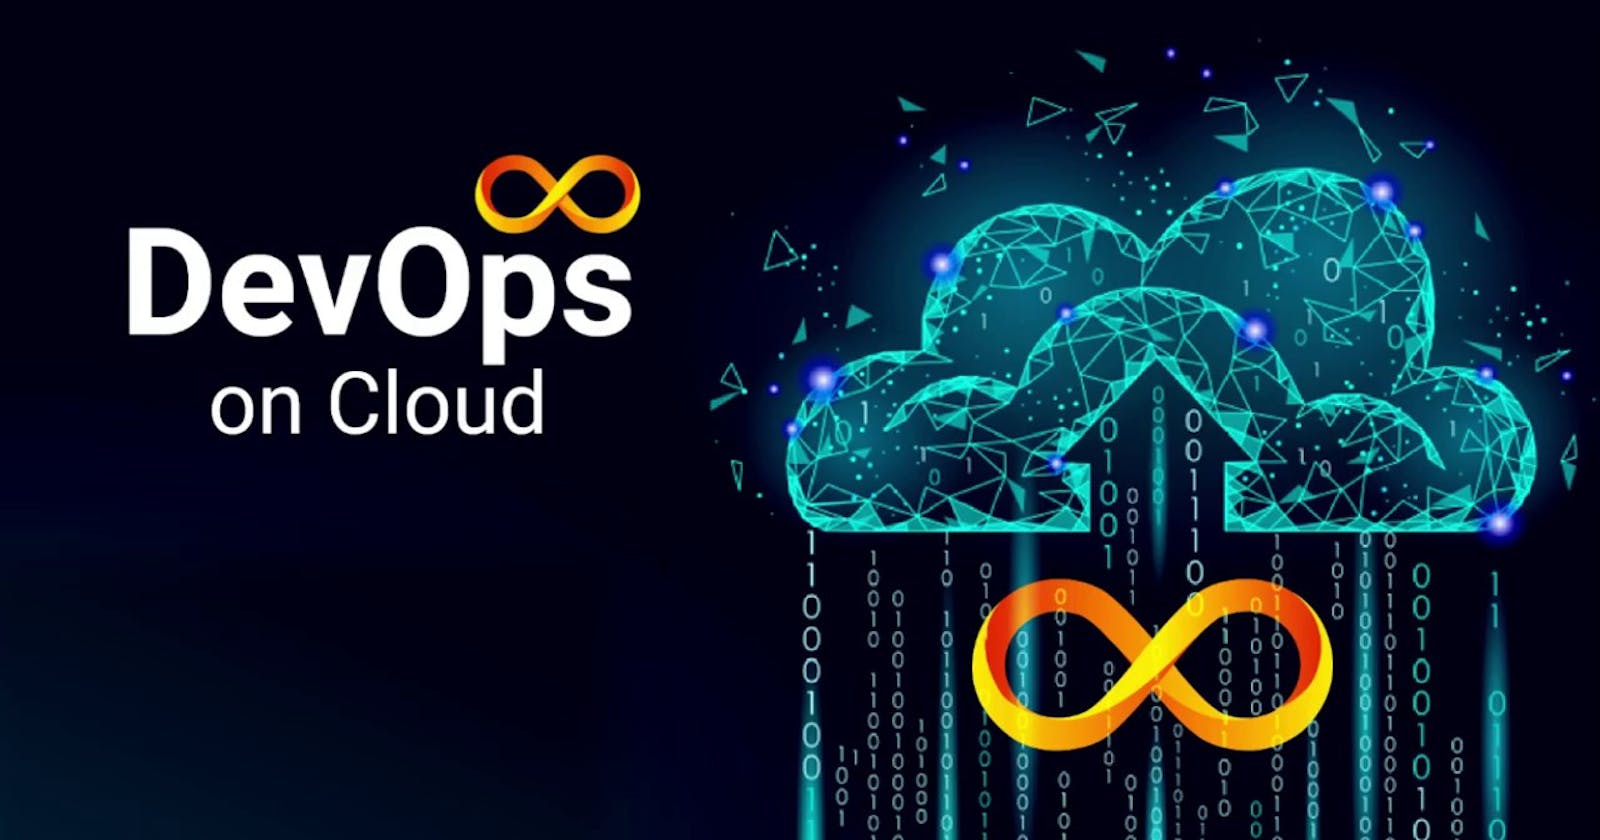 DevOps on Cloud